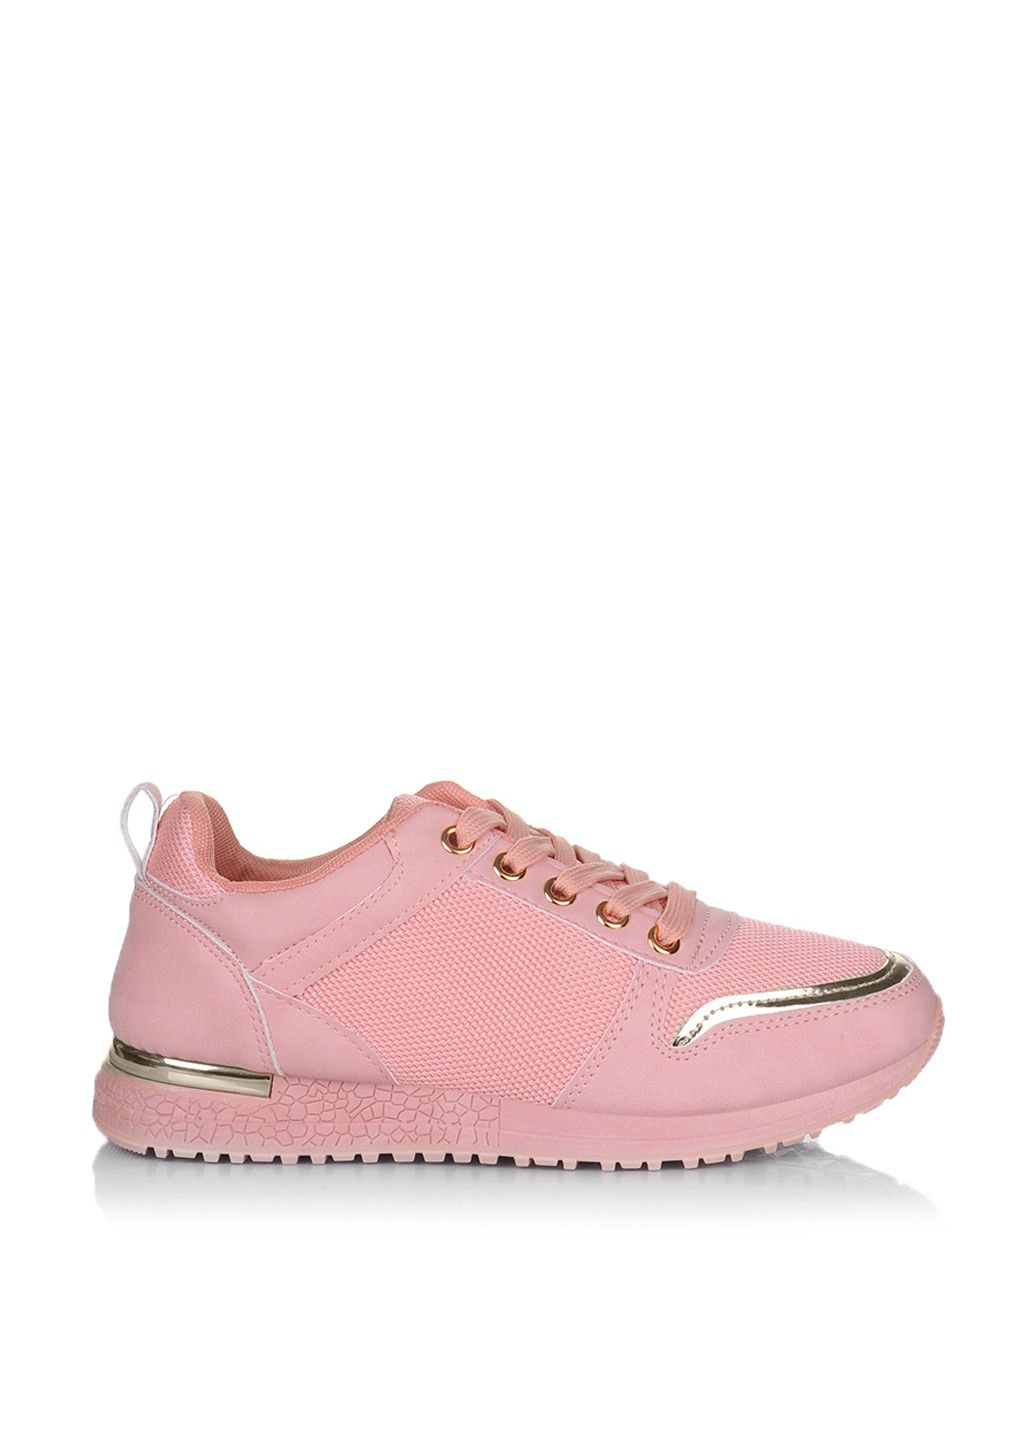 Бледно-розовые демисезонные кроссовки Ailaifa